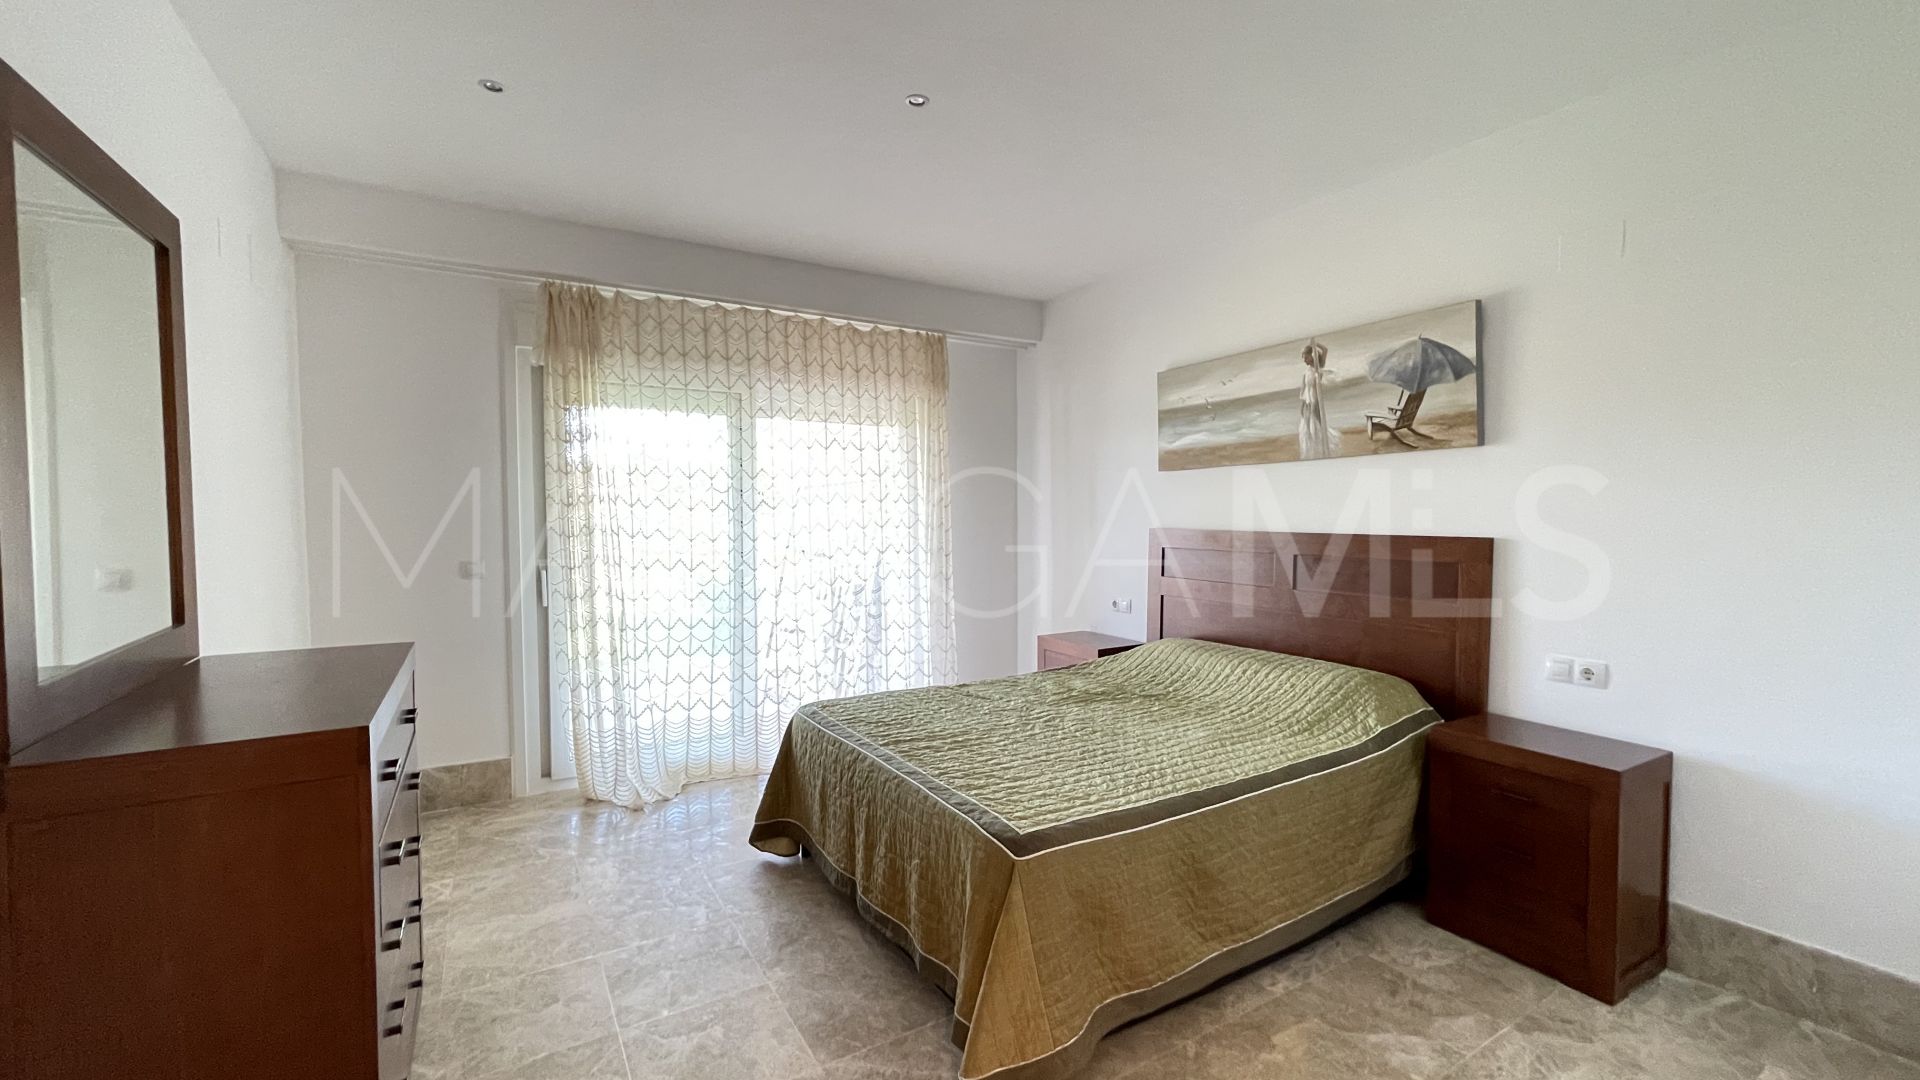 2 bedrooms ground floor duplex in Santa Clara for sale